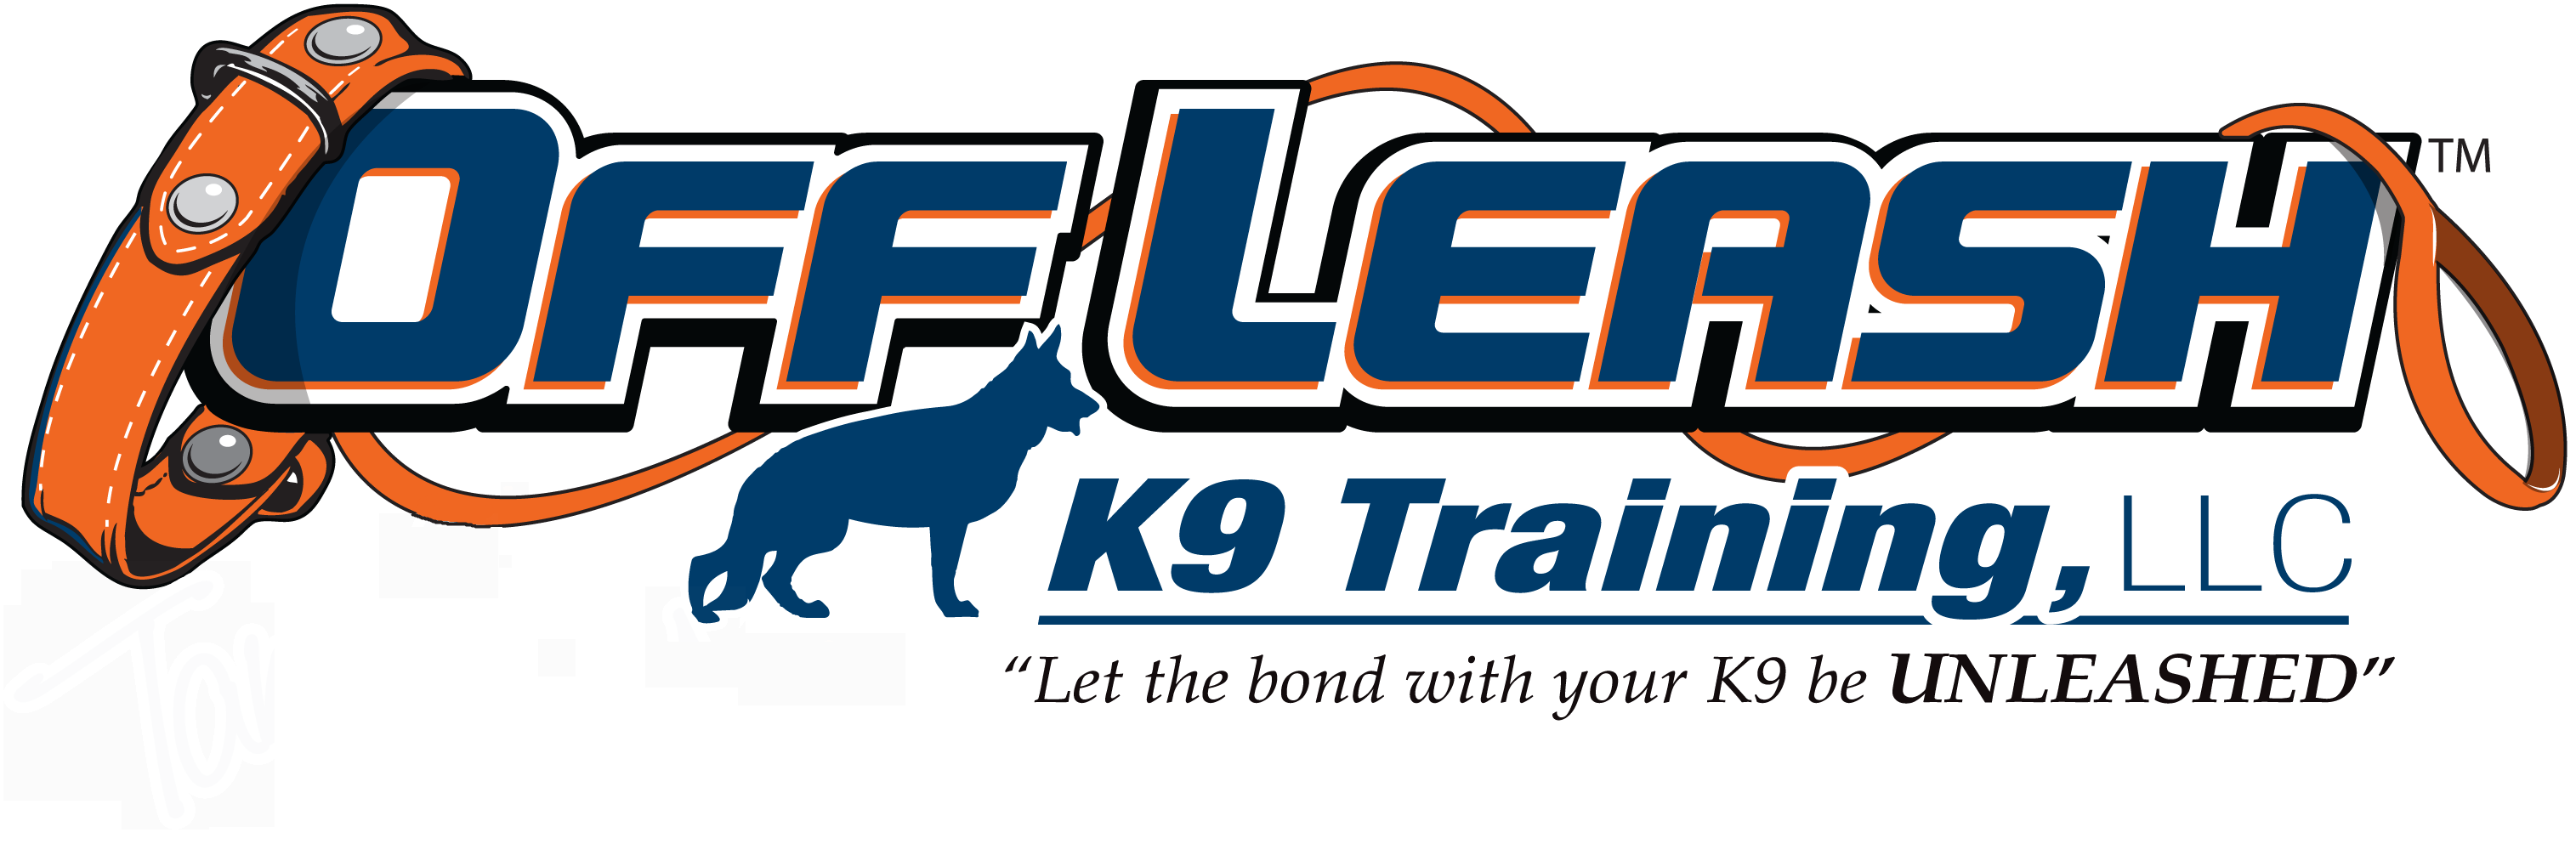 Leesburg Offleash K9 Dog Training